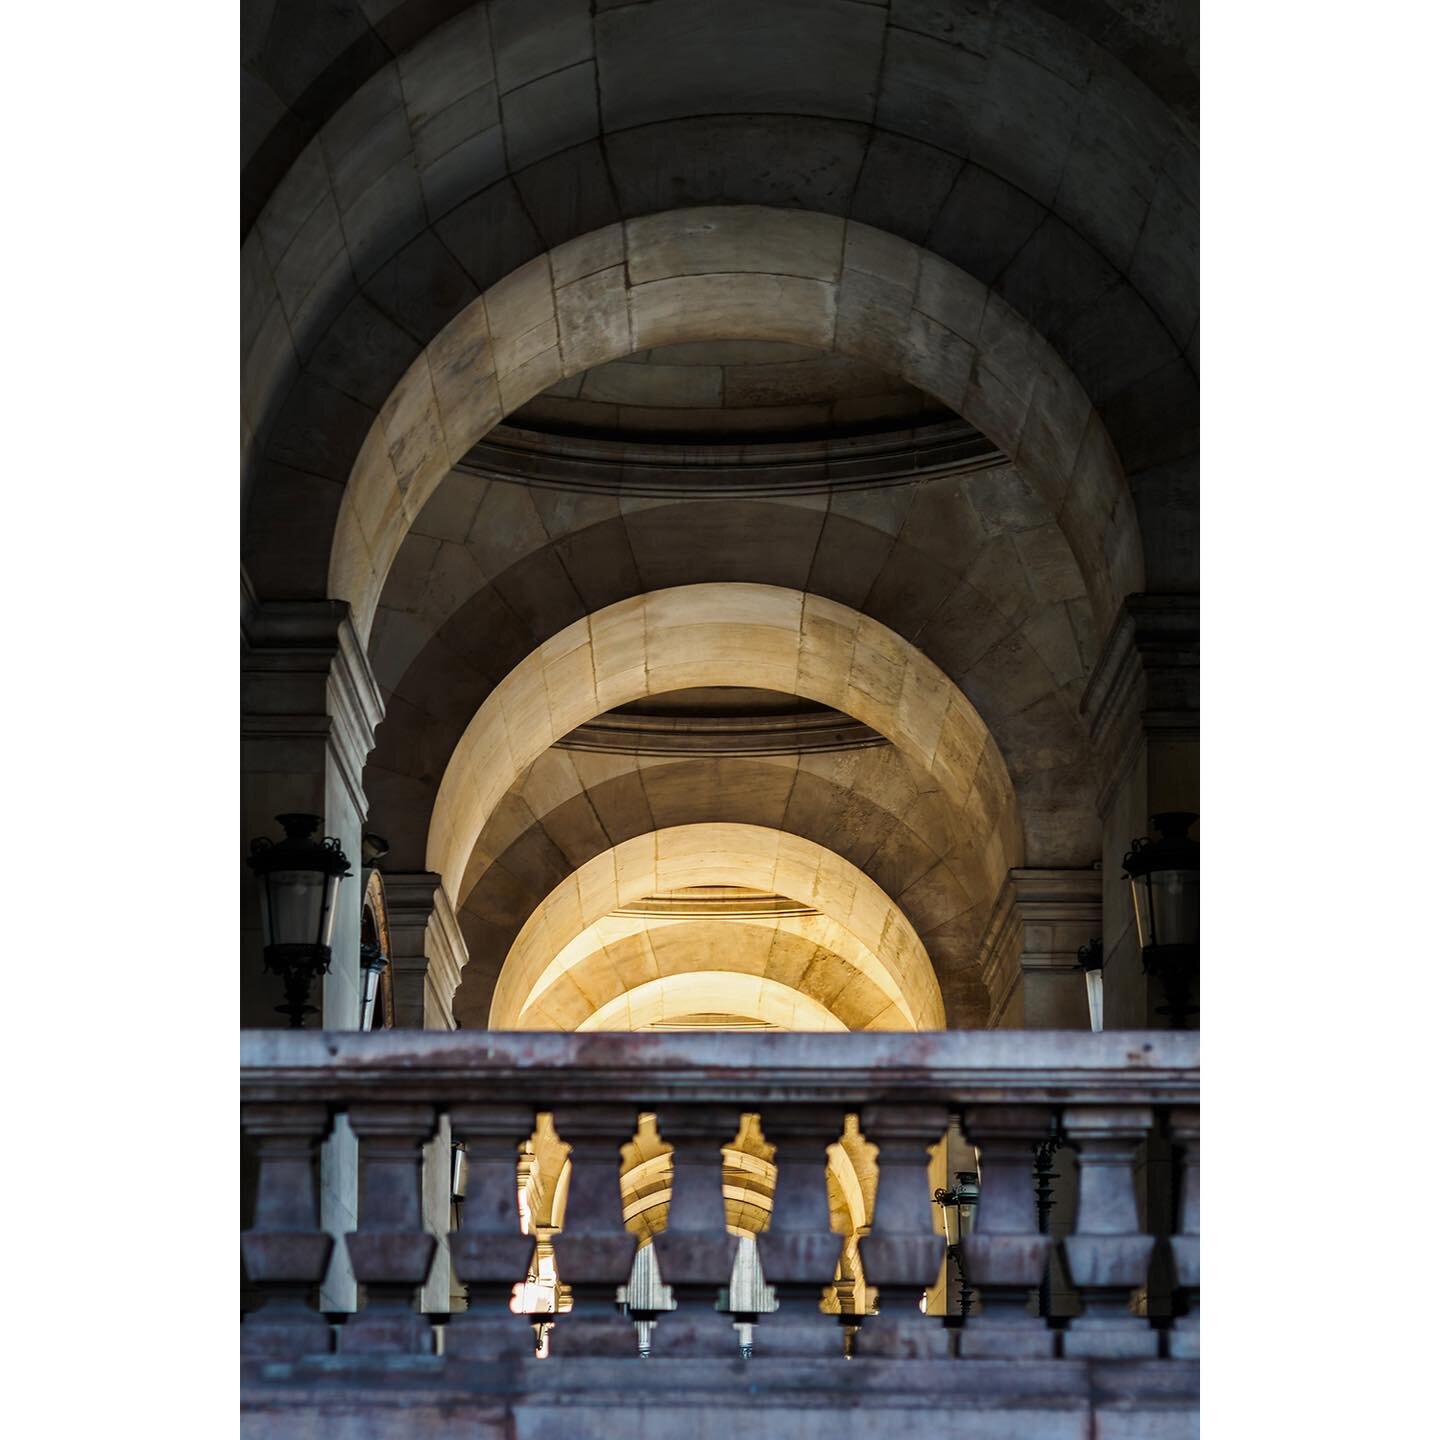 Opera arches - Paris
.
.

#Paris #OperaGarnier #architecturephotography #OperaGarnierParis #Parisphotography #Paris_focus_on #Pariscityvision #streetphotography #Parisarchitecture #ig_Paris #igersParis #picoftheday #photooftheday #Paris_maville #Pari